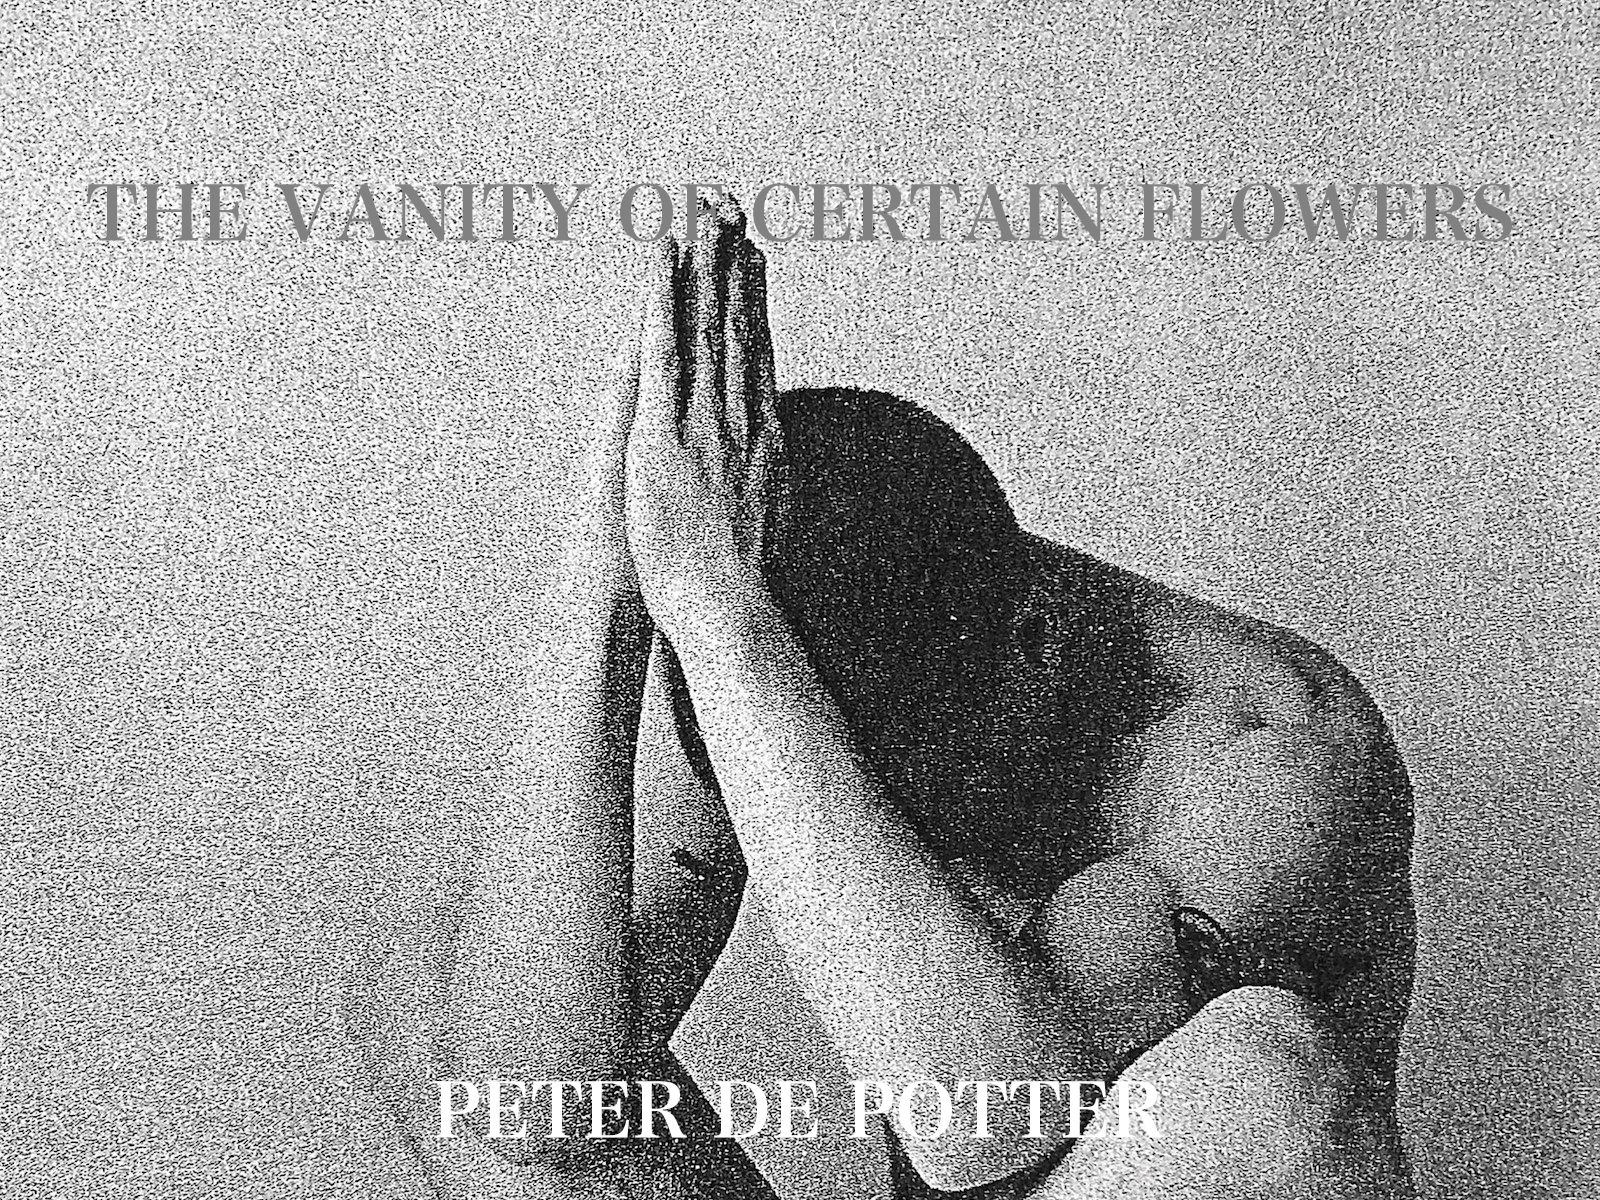 THE VANITY OF CERTAIN FLOWERS – Peter de Potter